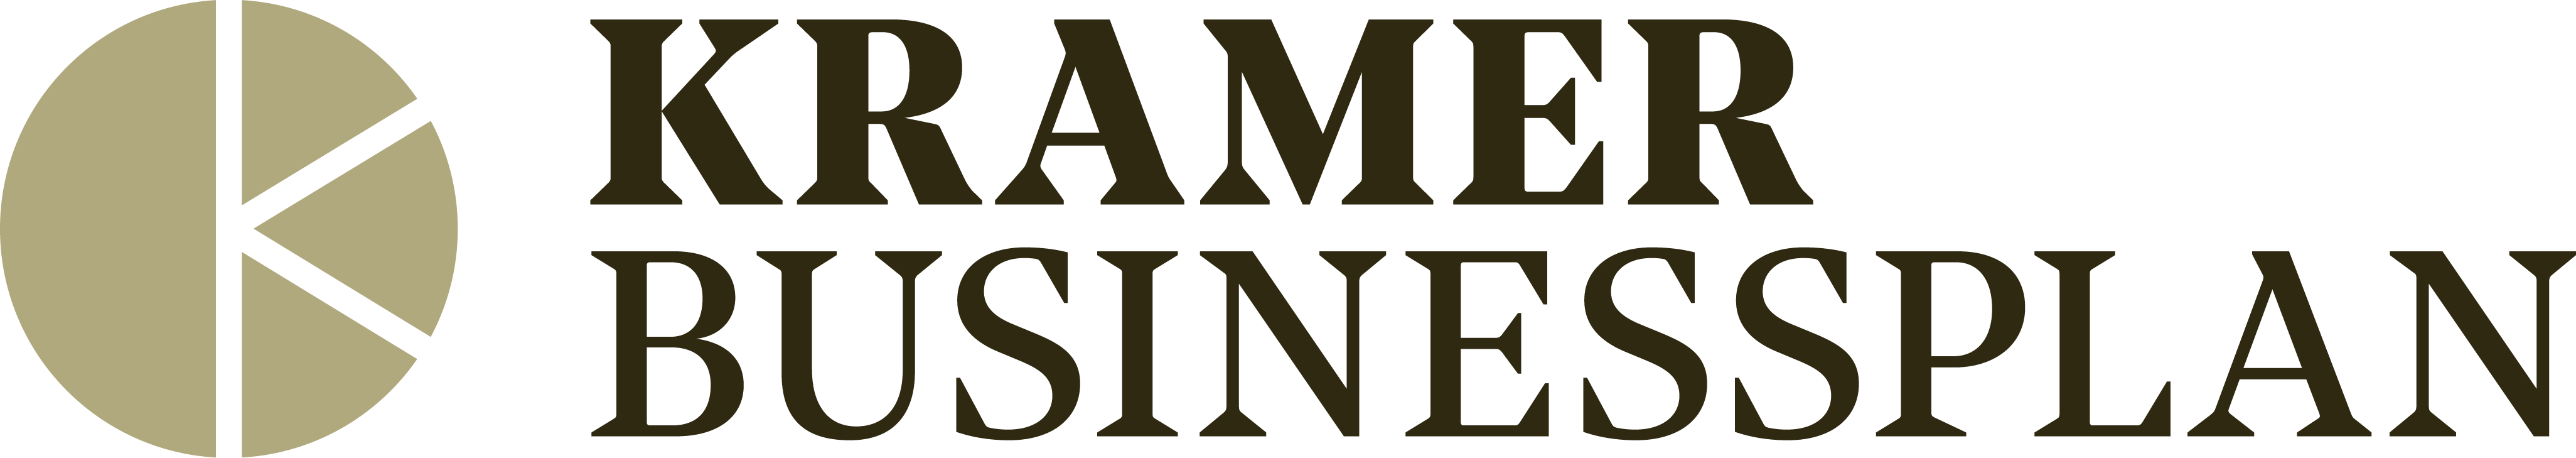 Kramer Businessplan Logo